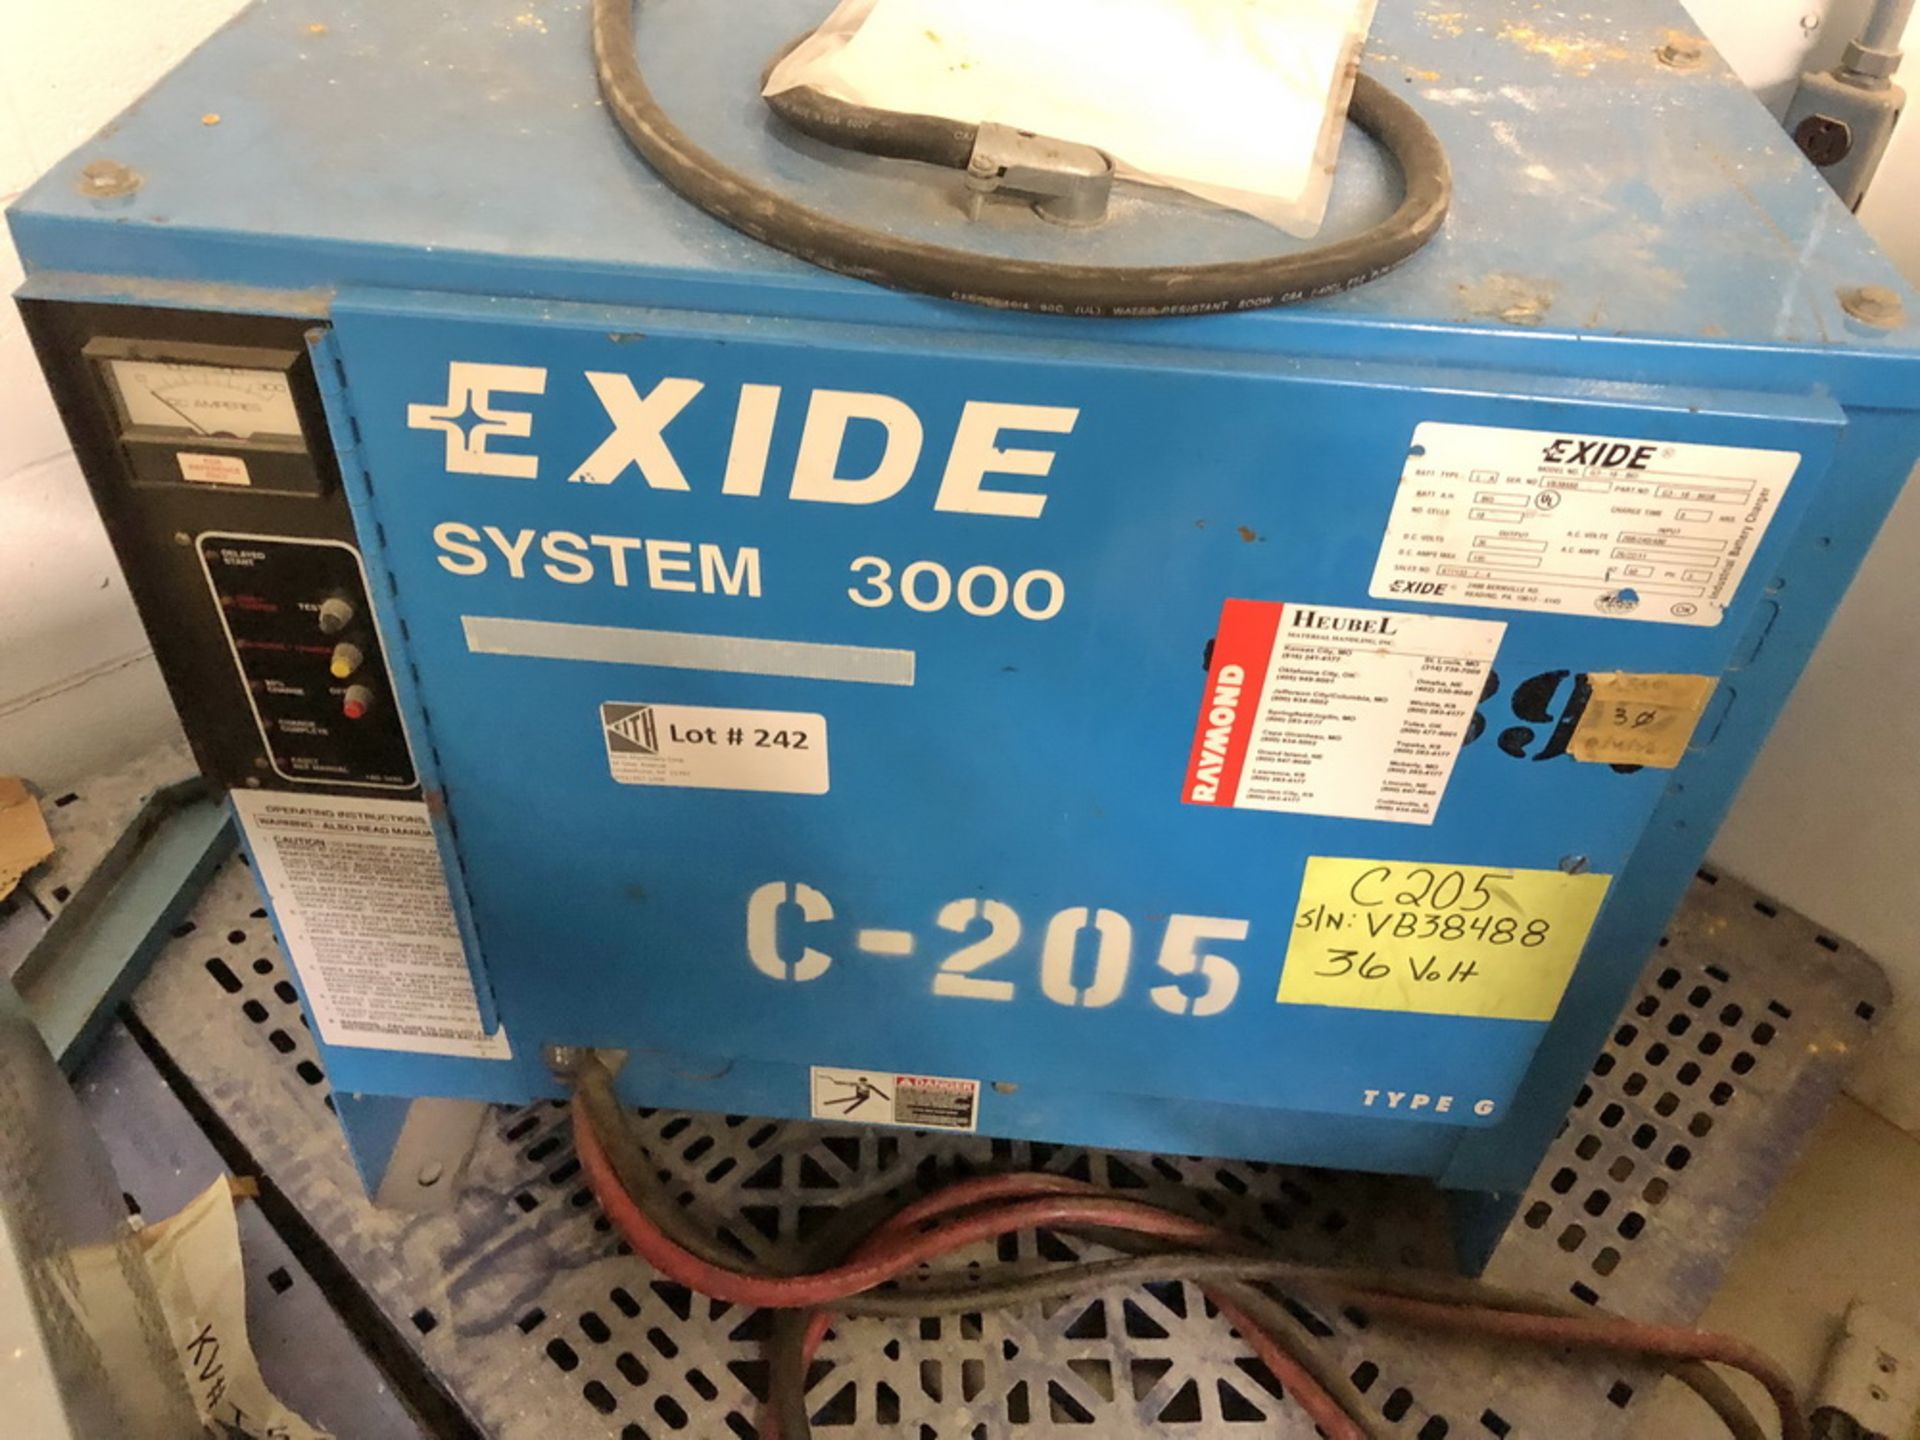 Exide Battery Charger, System 3000, 36 volts, Model G3-18-863, S/N VB38488